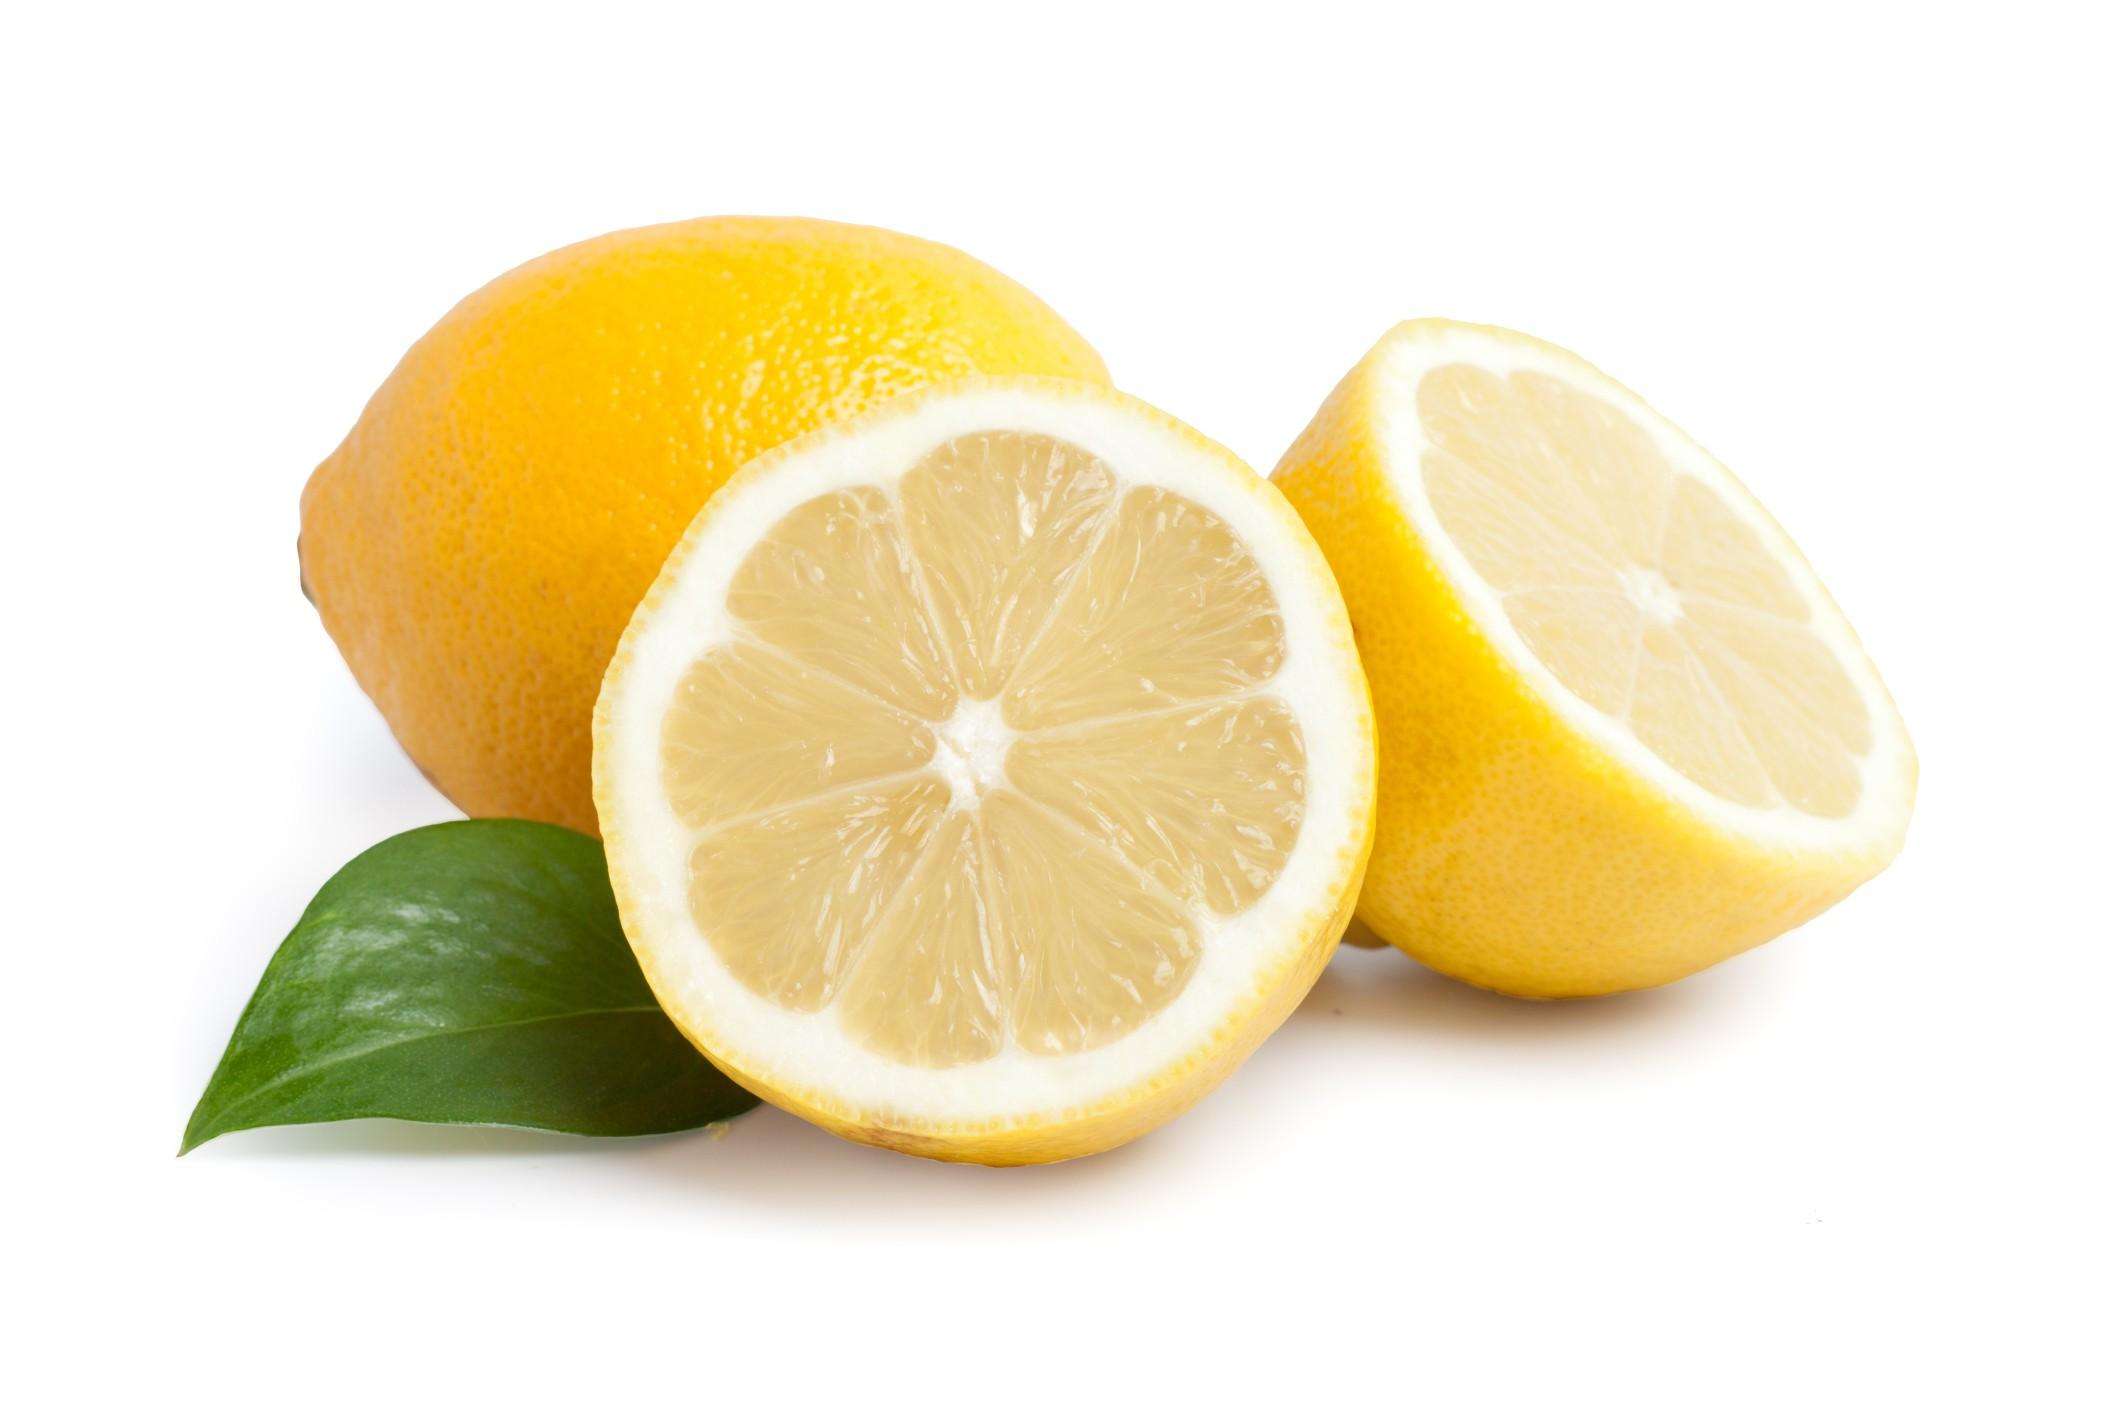 Acqua e limone, uova, te verde: i rituali del mattino